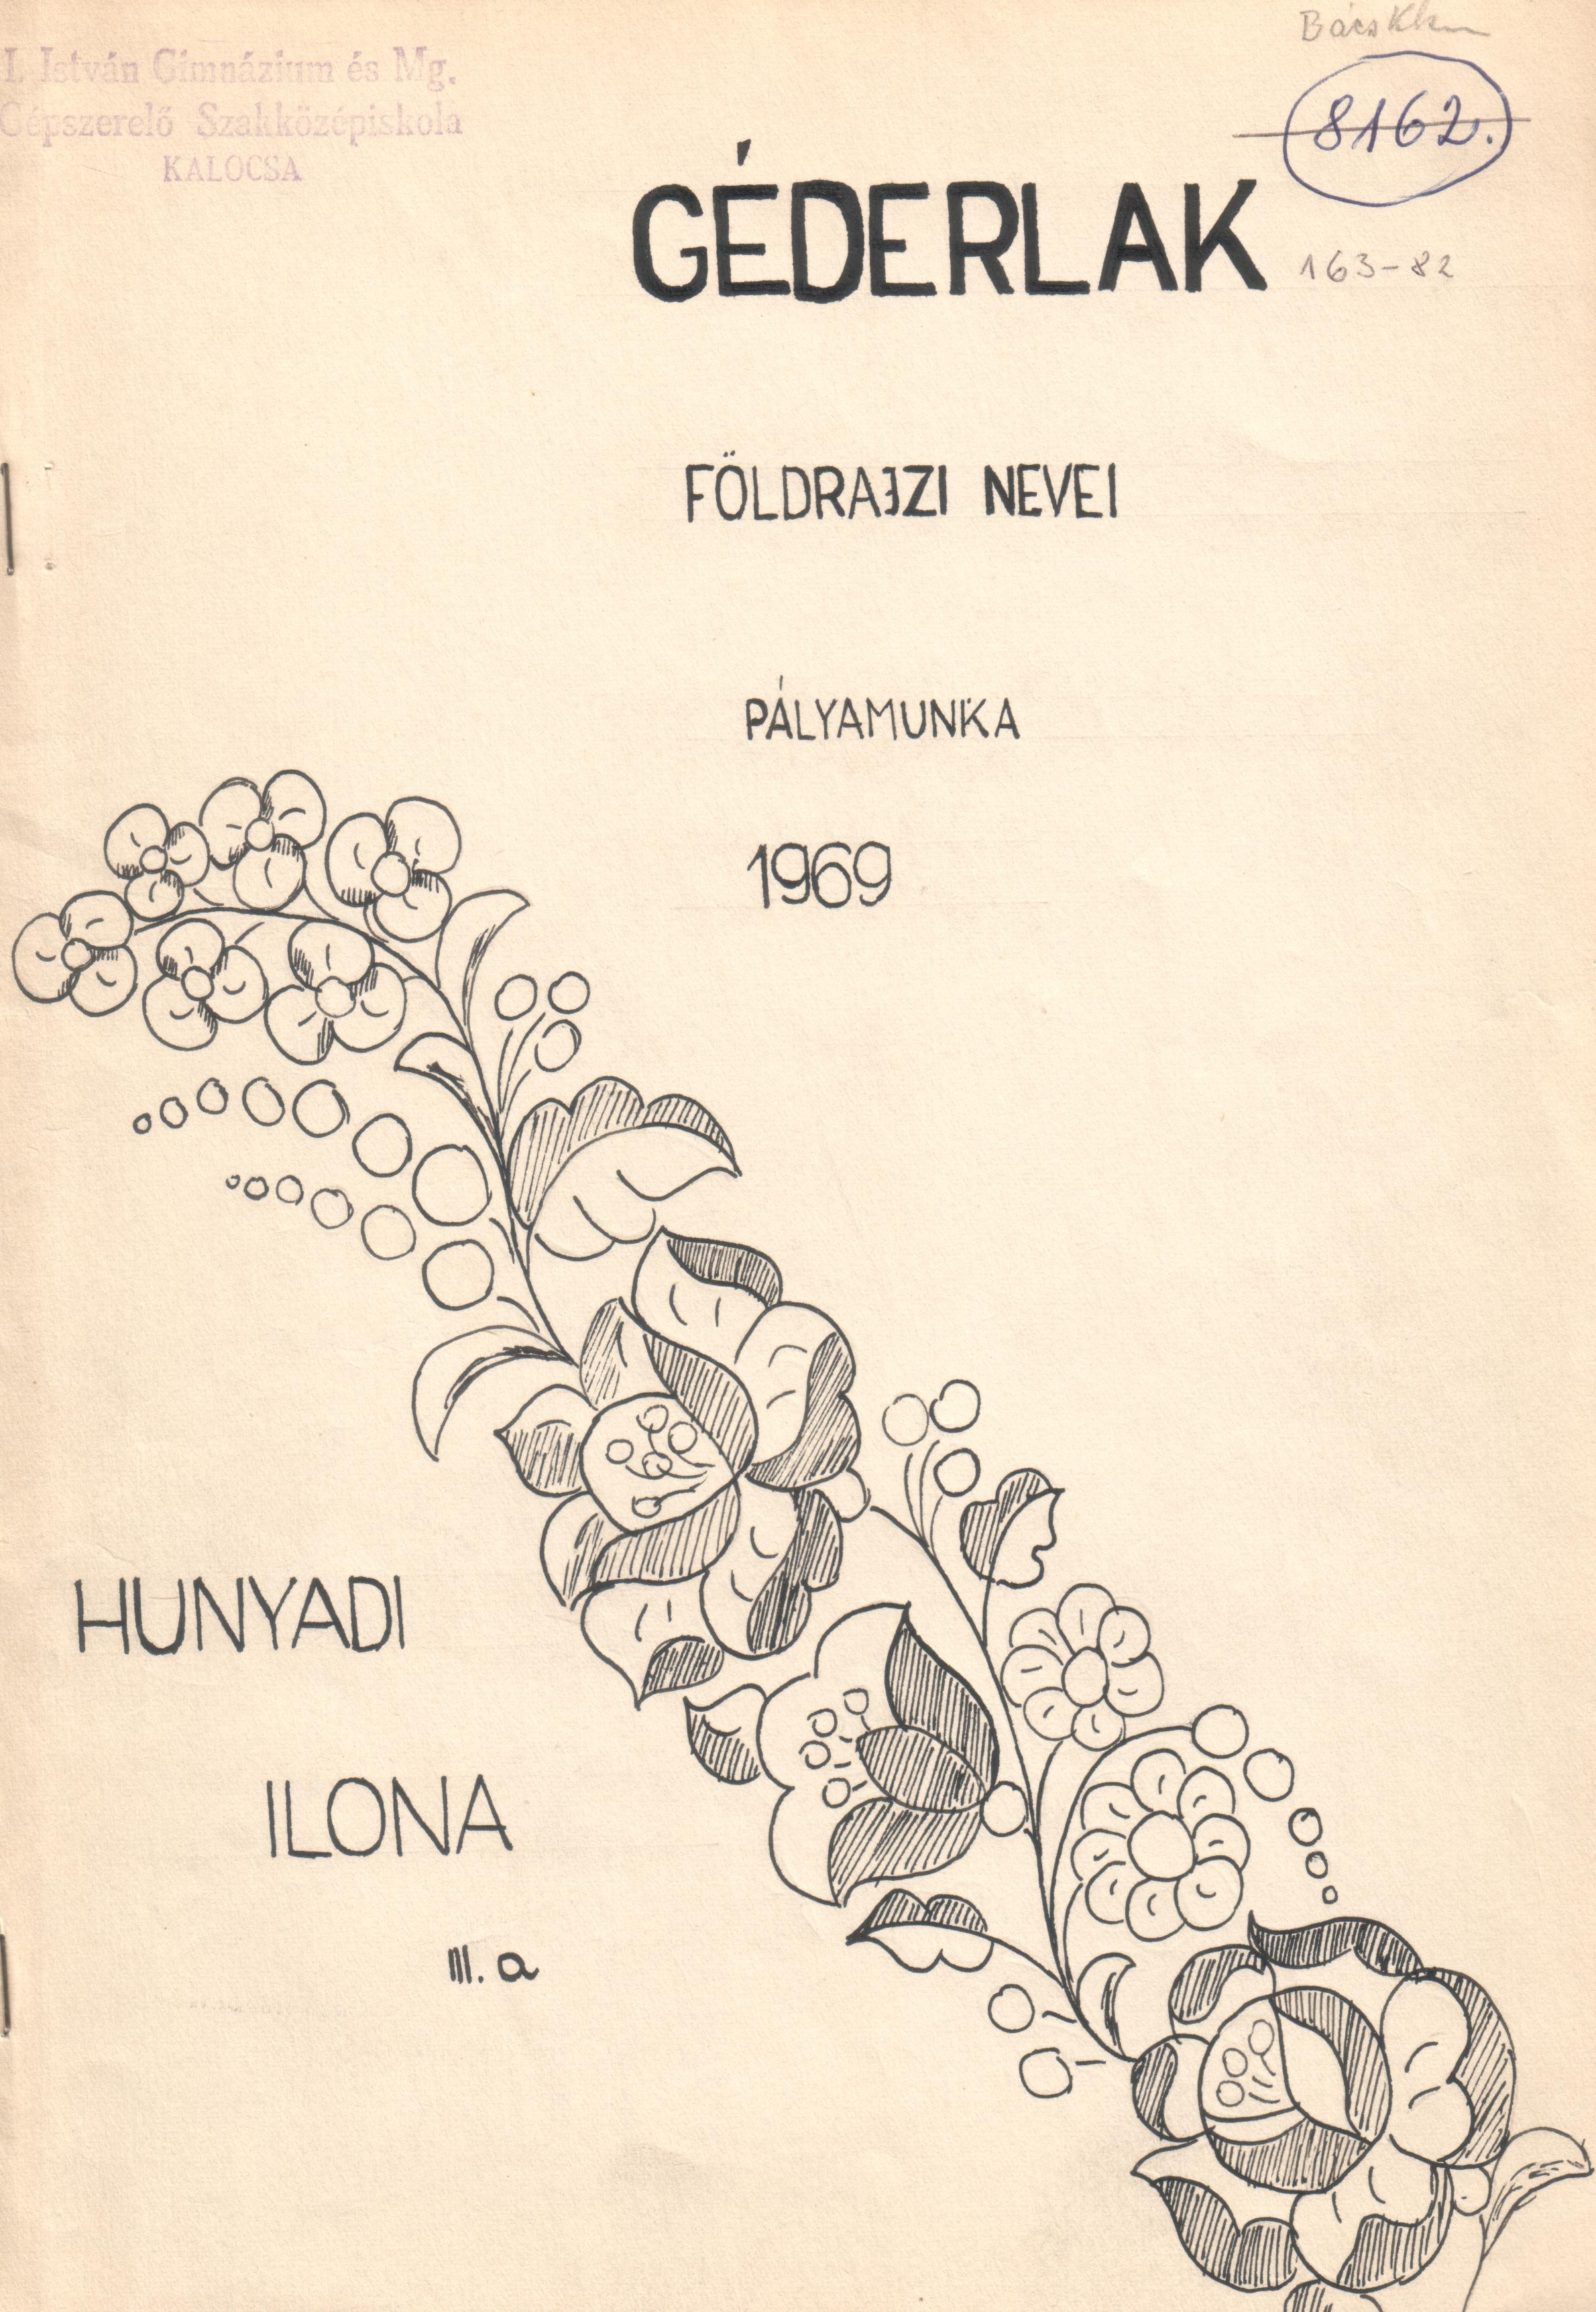 Géderlak földrajzi nevei c. pályázat gépirata. (Viski Károly Múzeum Kalocsa RR-F)